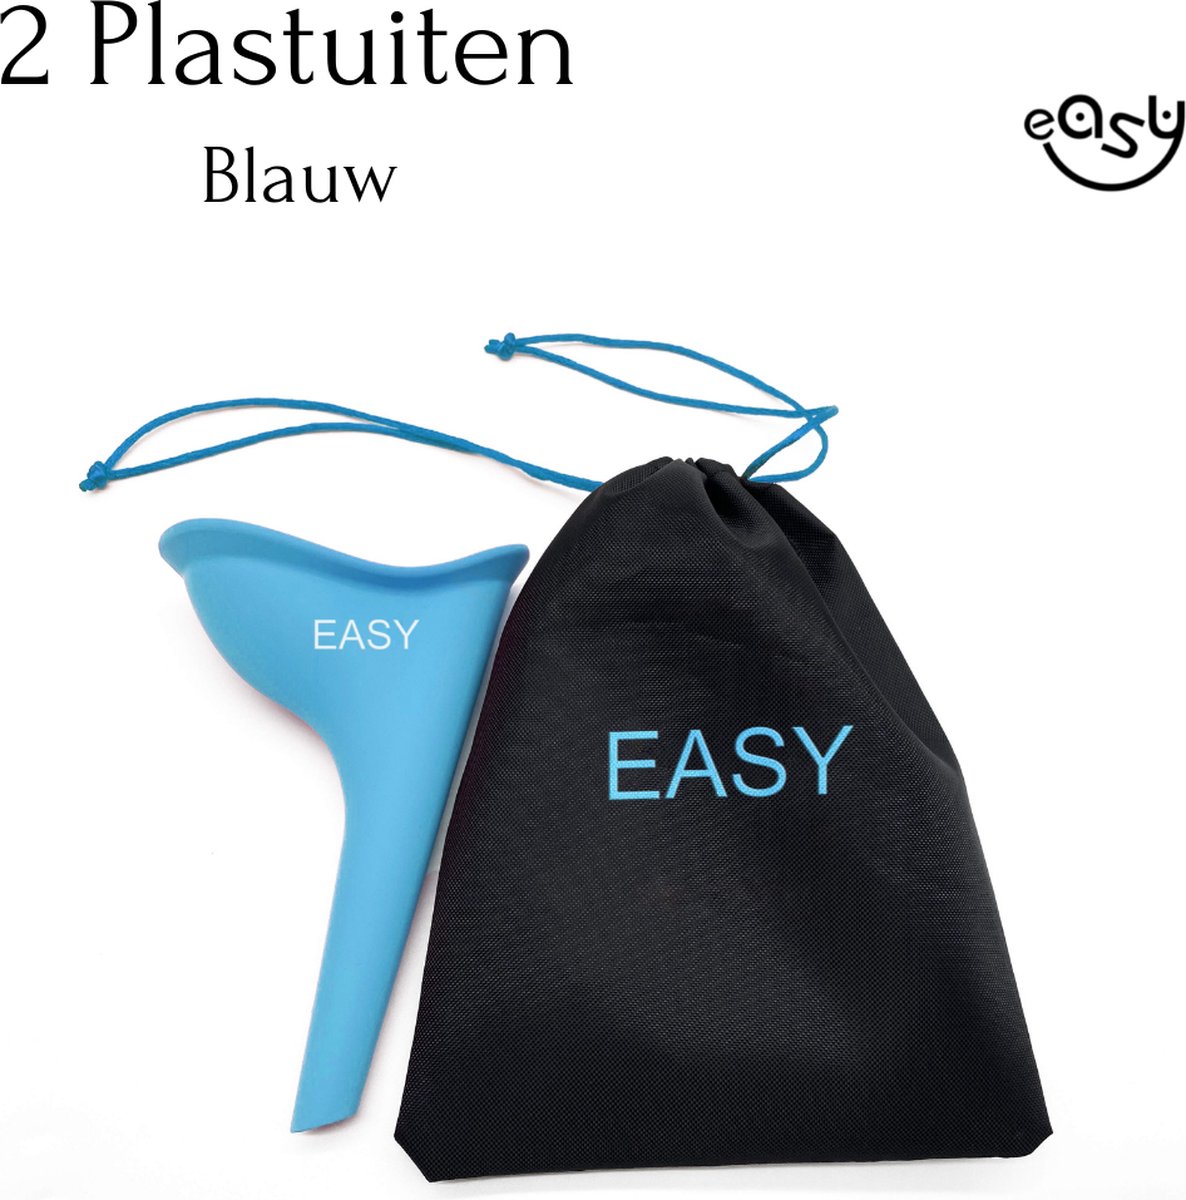 Plastuit - Blauw 2 - Plastuit voor vrouwen - Plastuitjes - Urinaal - Siliconen-plaskoker - Plas zak - easy